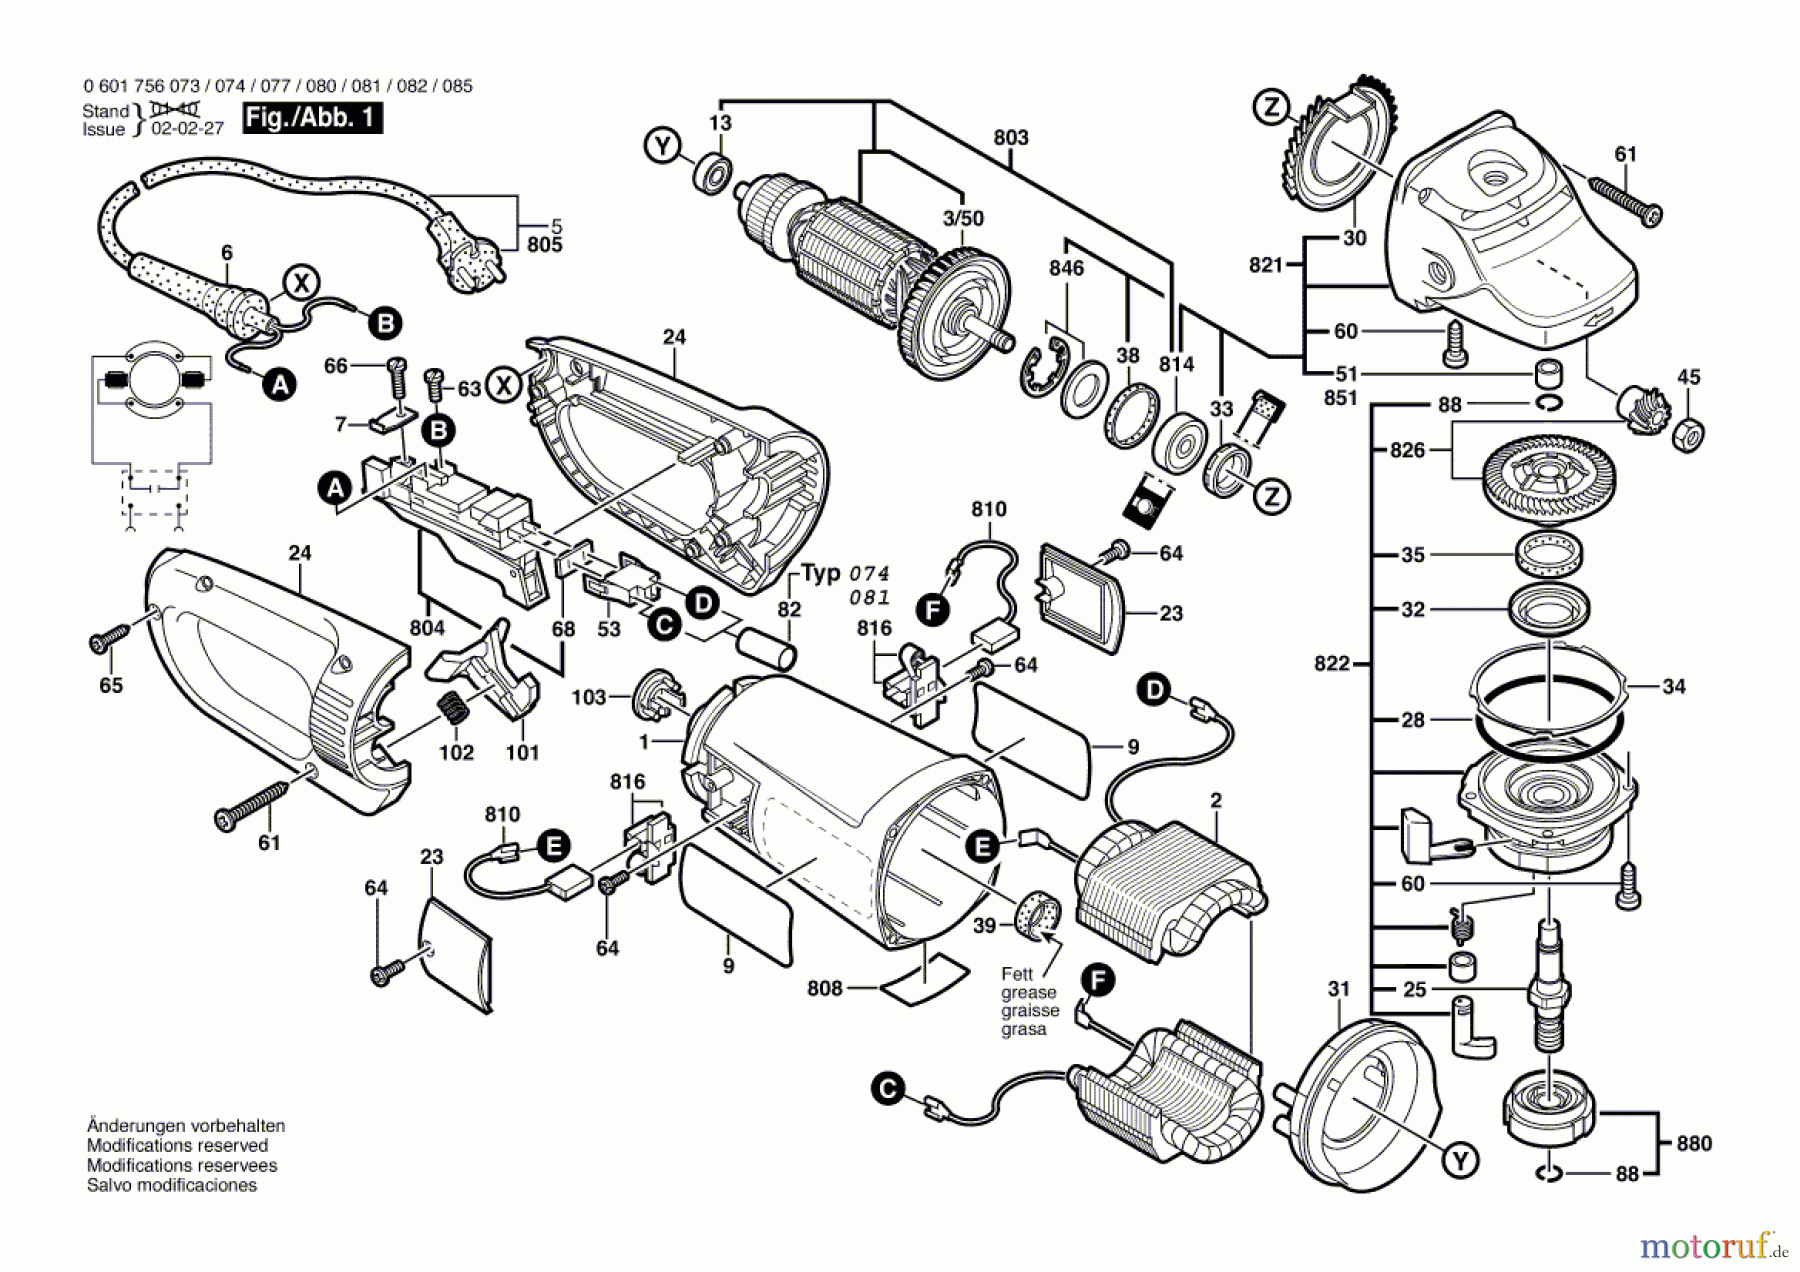  Bosch Werkzeug Winkelschleifer GWS 25-230 S Seite 1